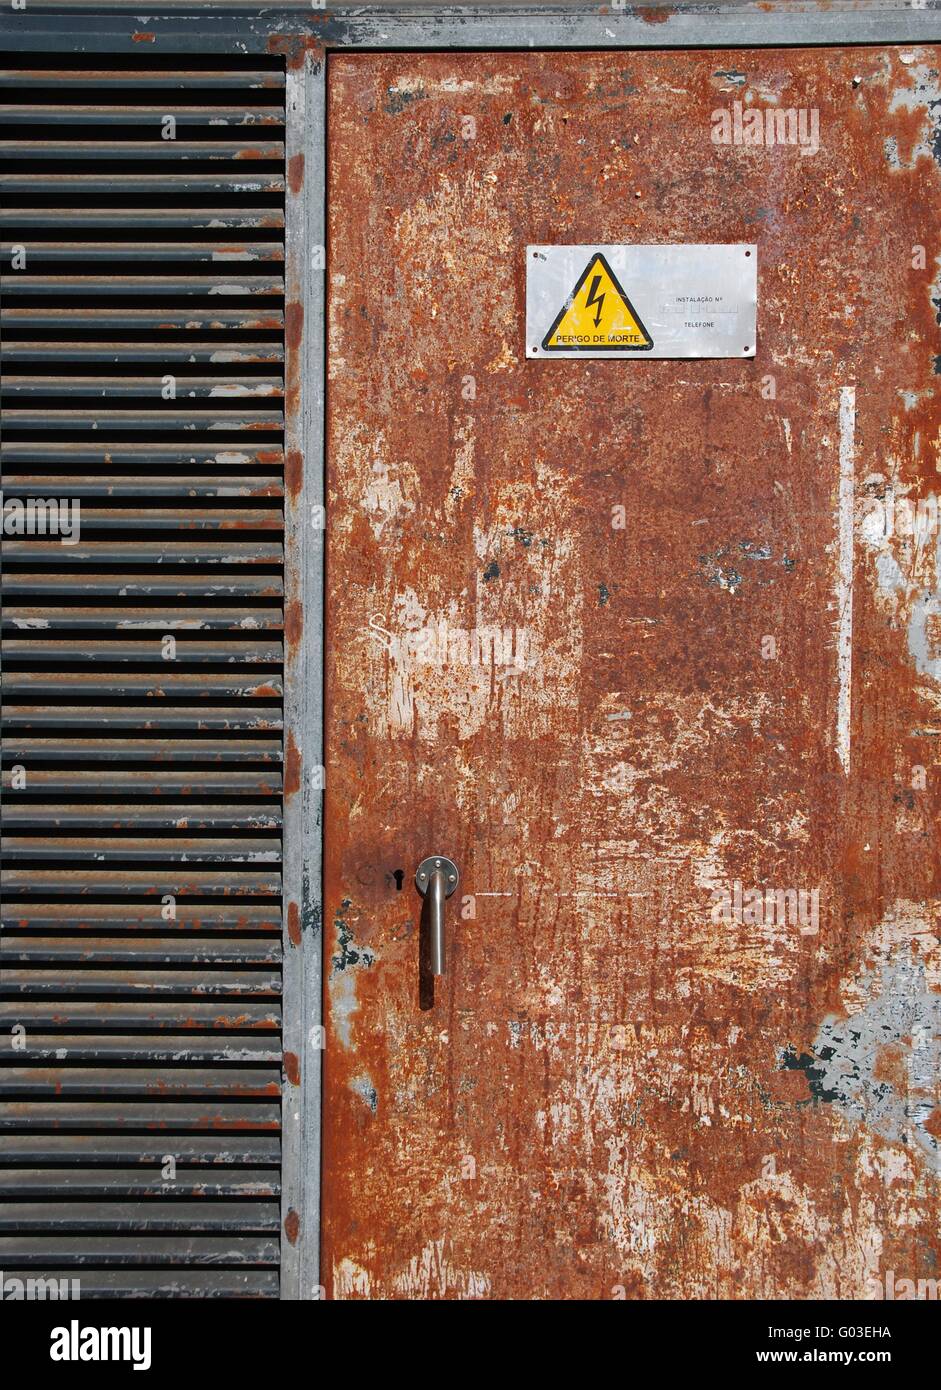 danger high voltage sign on a rusty metal door Stock Photo